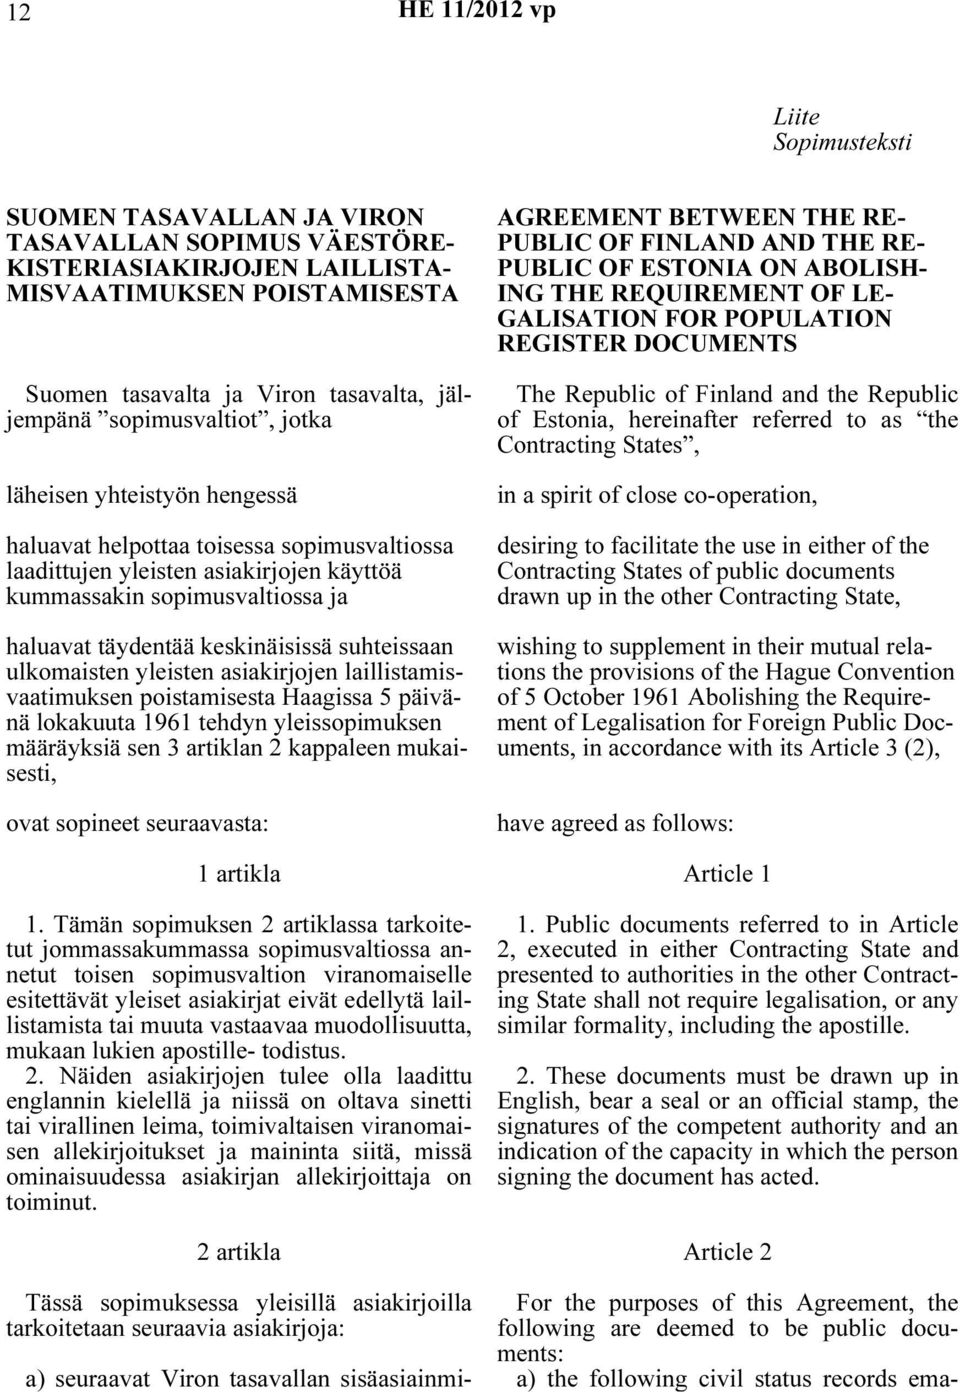 keskinäisissä suhteissaan ulkomaisten yleisten asiakirjojen laillistamisvaatimuksen poistamisesta Haagissa 5 päivänä lokakuuta 1961 tehdyn yleissopimuksen määräyksiä sen 3 artiklan 2 kappaleen